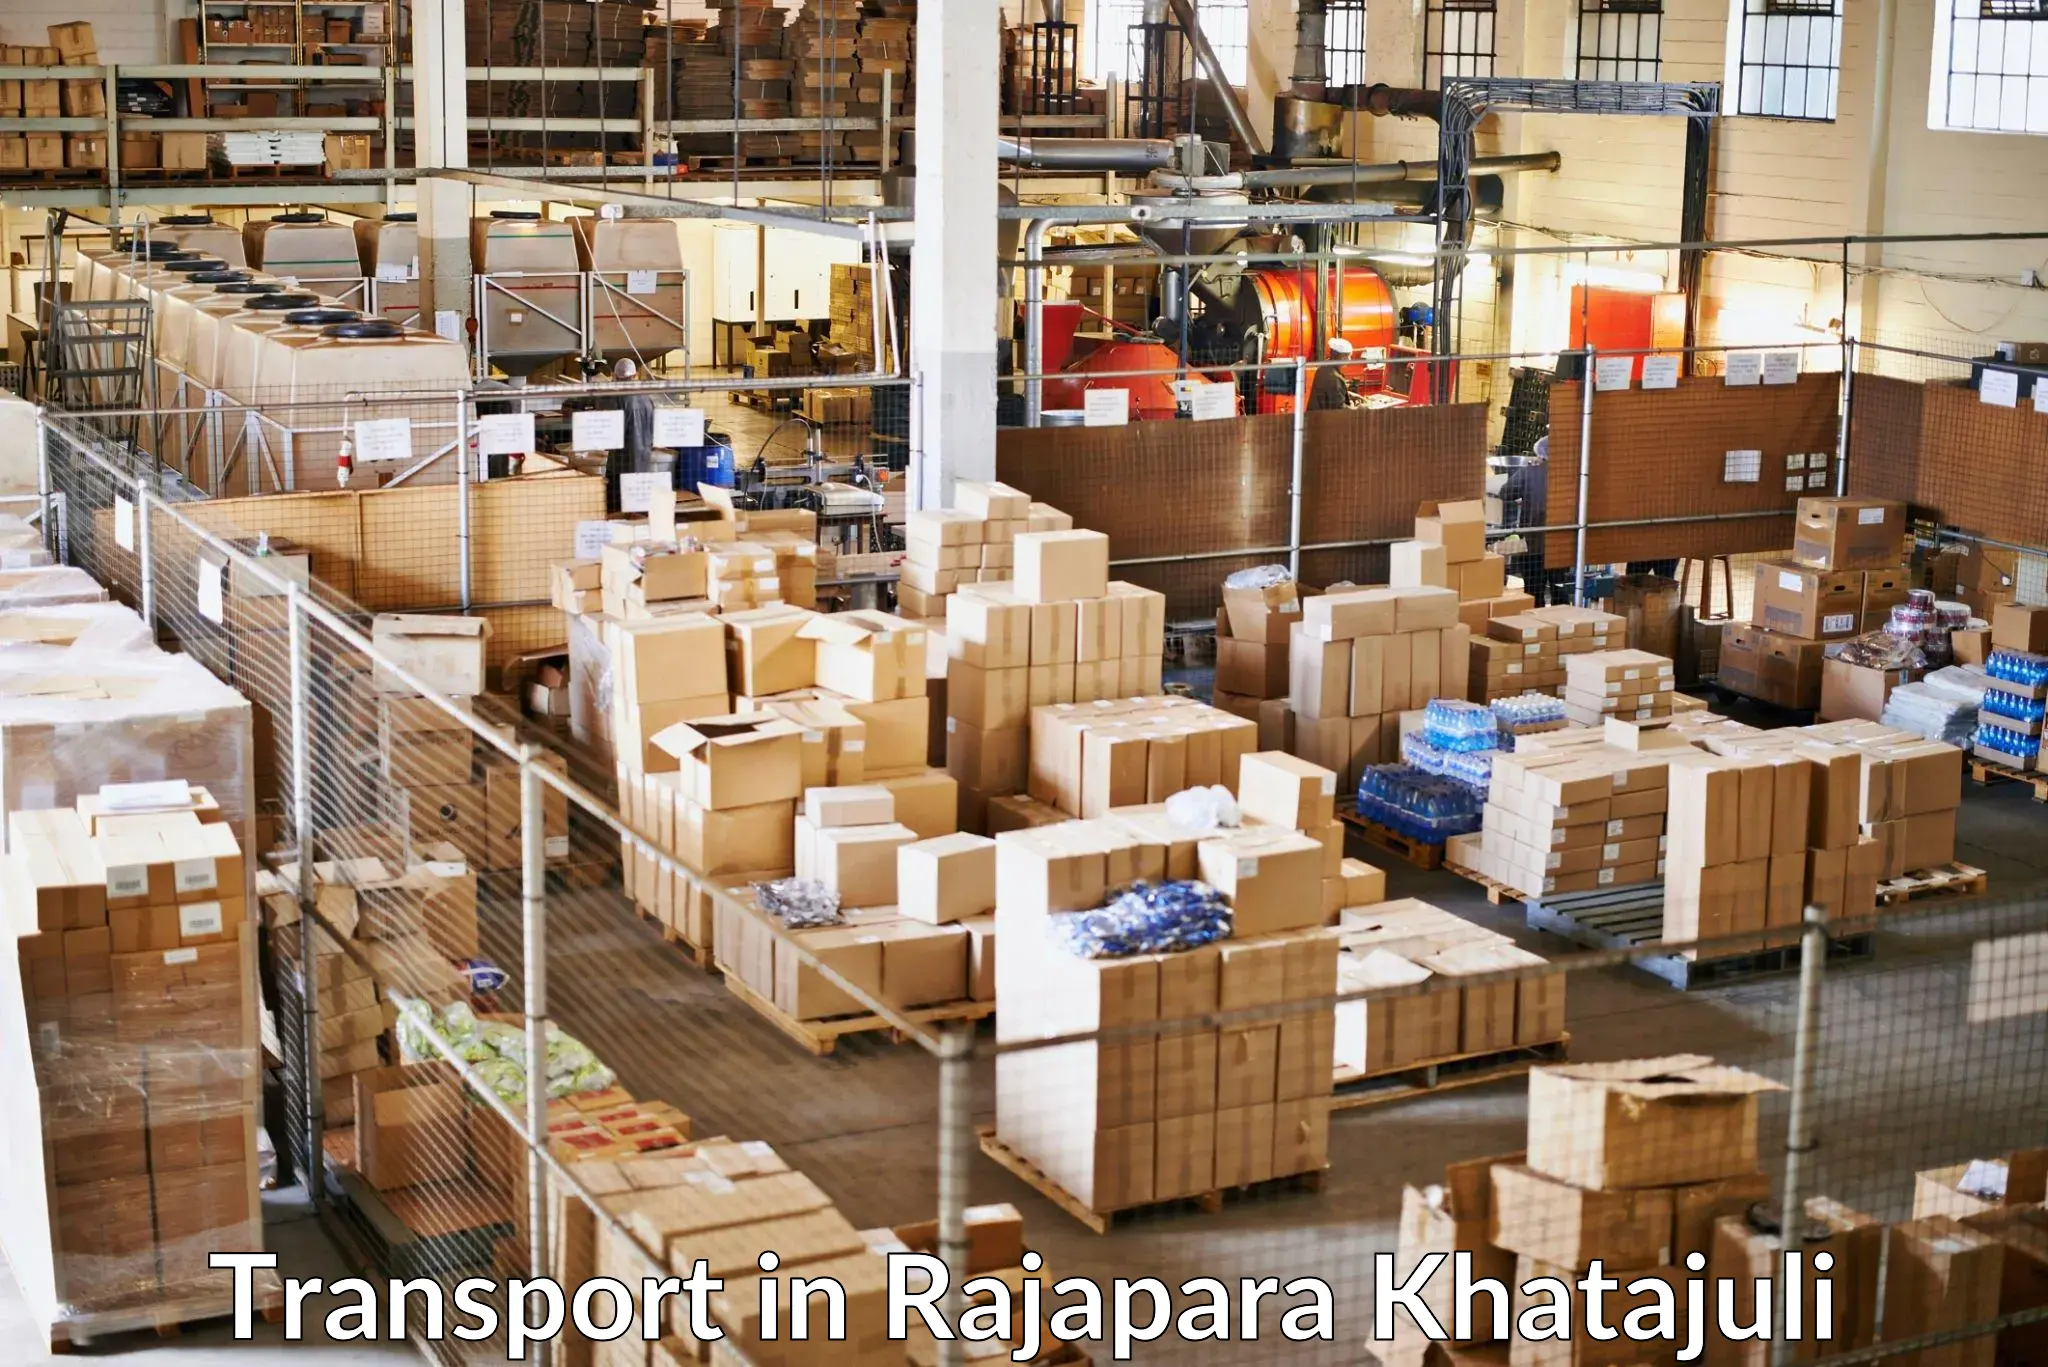 Vehicle transport services in Rajapara Khatajuli